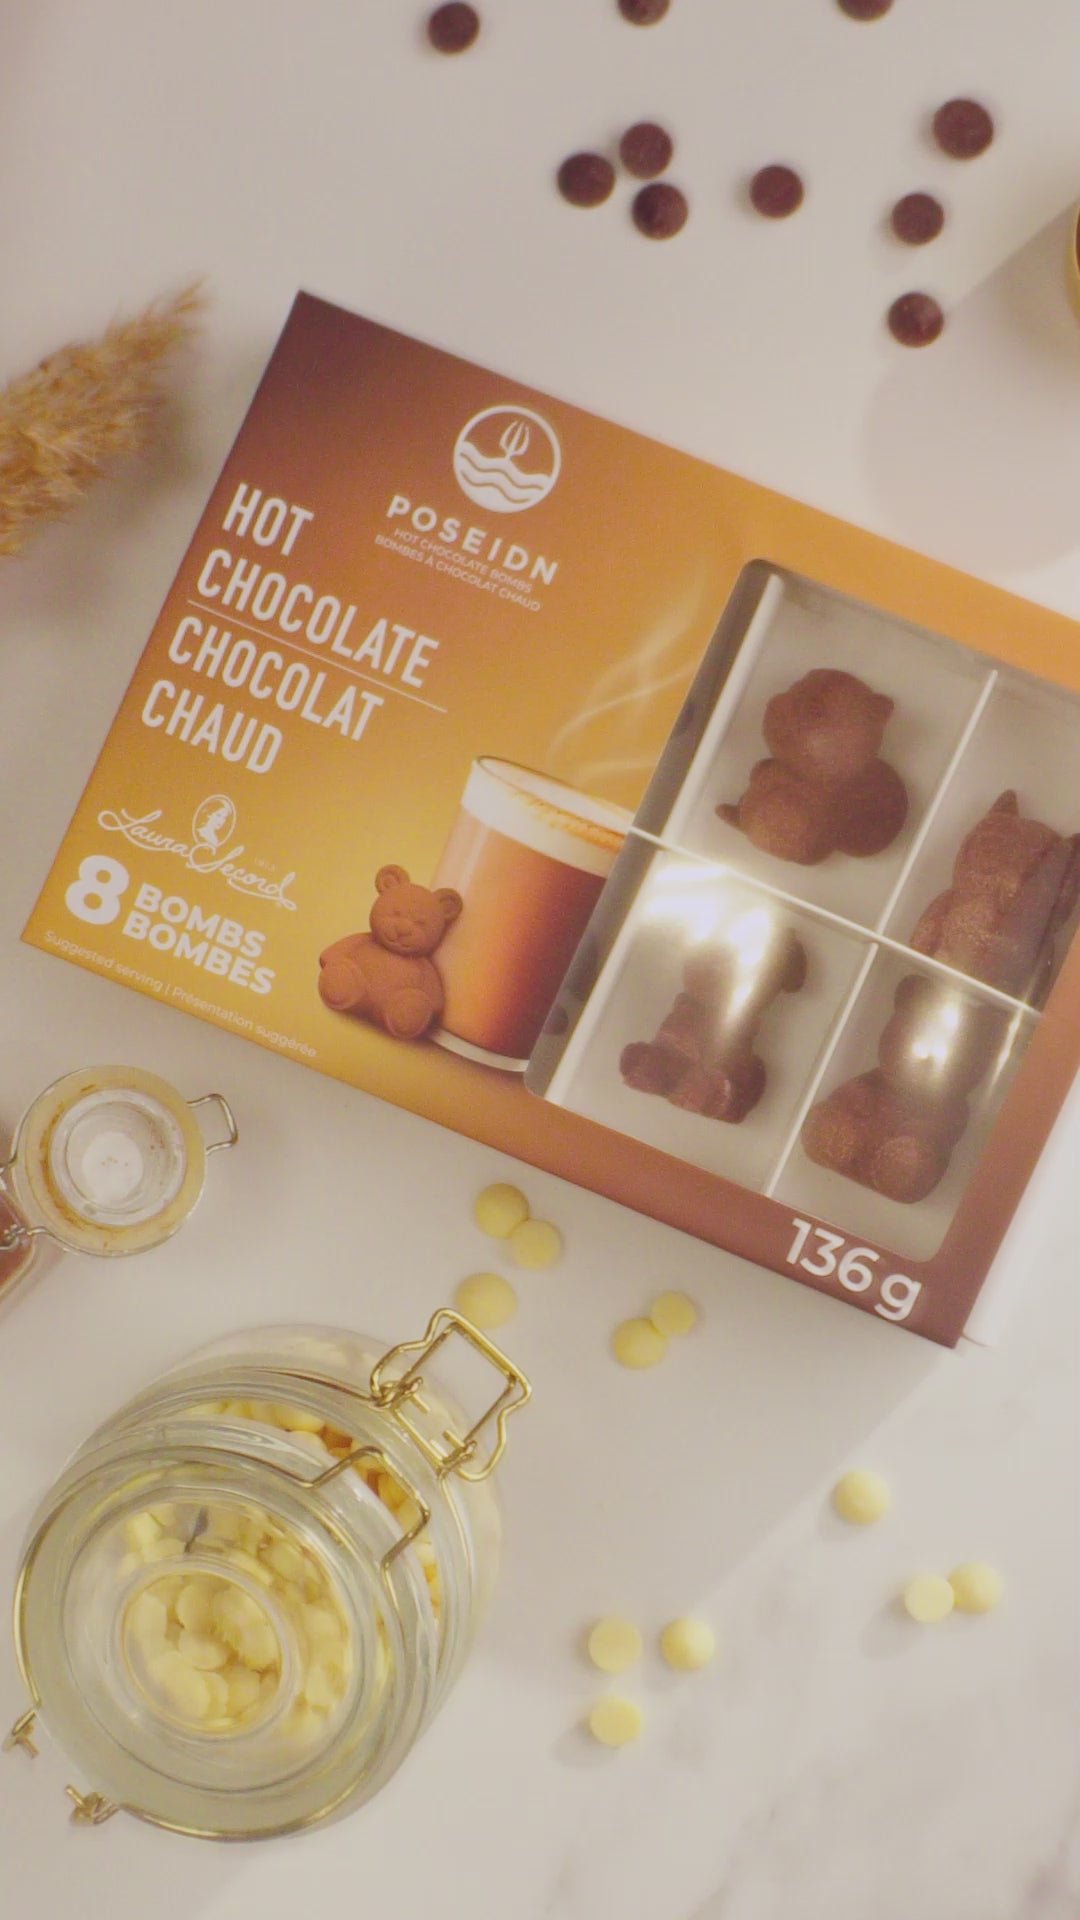 Coffret de bombes pour chocolat chaud - Cadeaux - L'AVANT GARDISTE